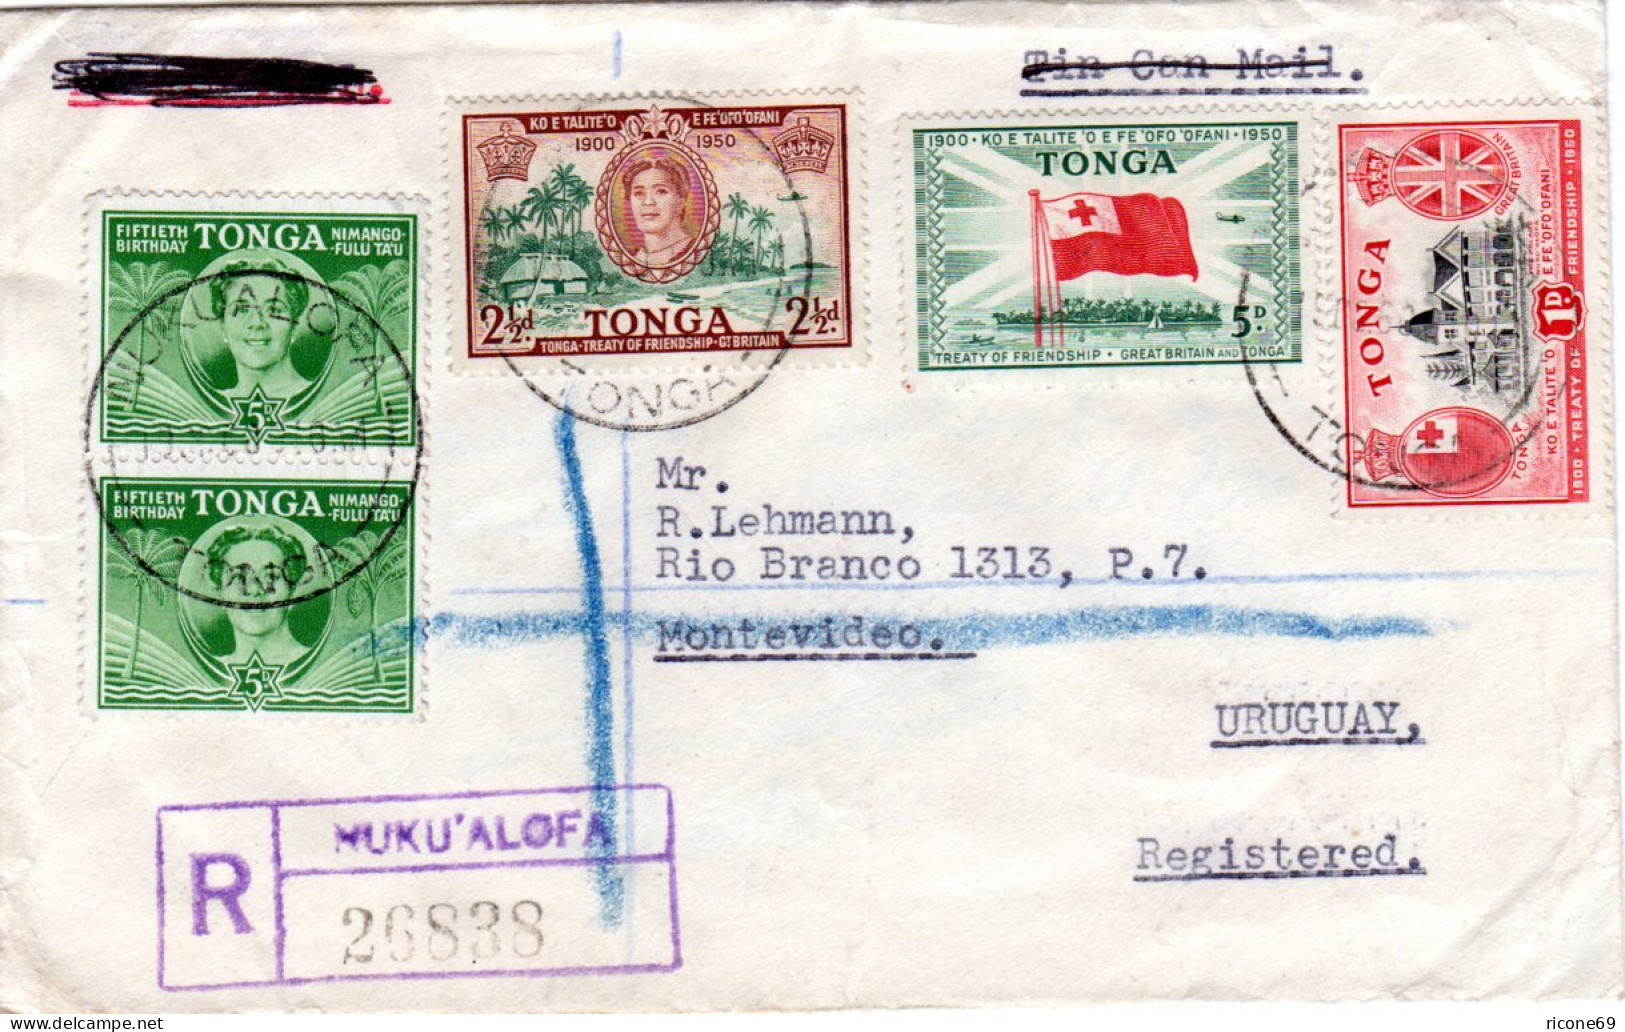 Tonga 1960, 5 Marken Auf Einschreiben Brief N. Uruguay. - Sonstige - Ozeanien